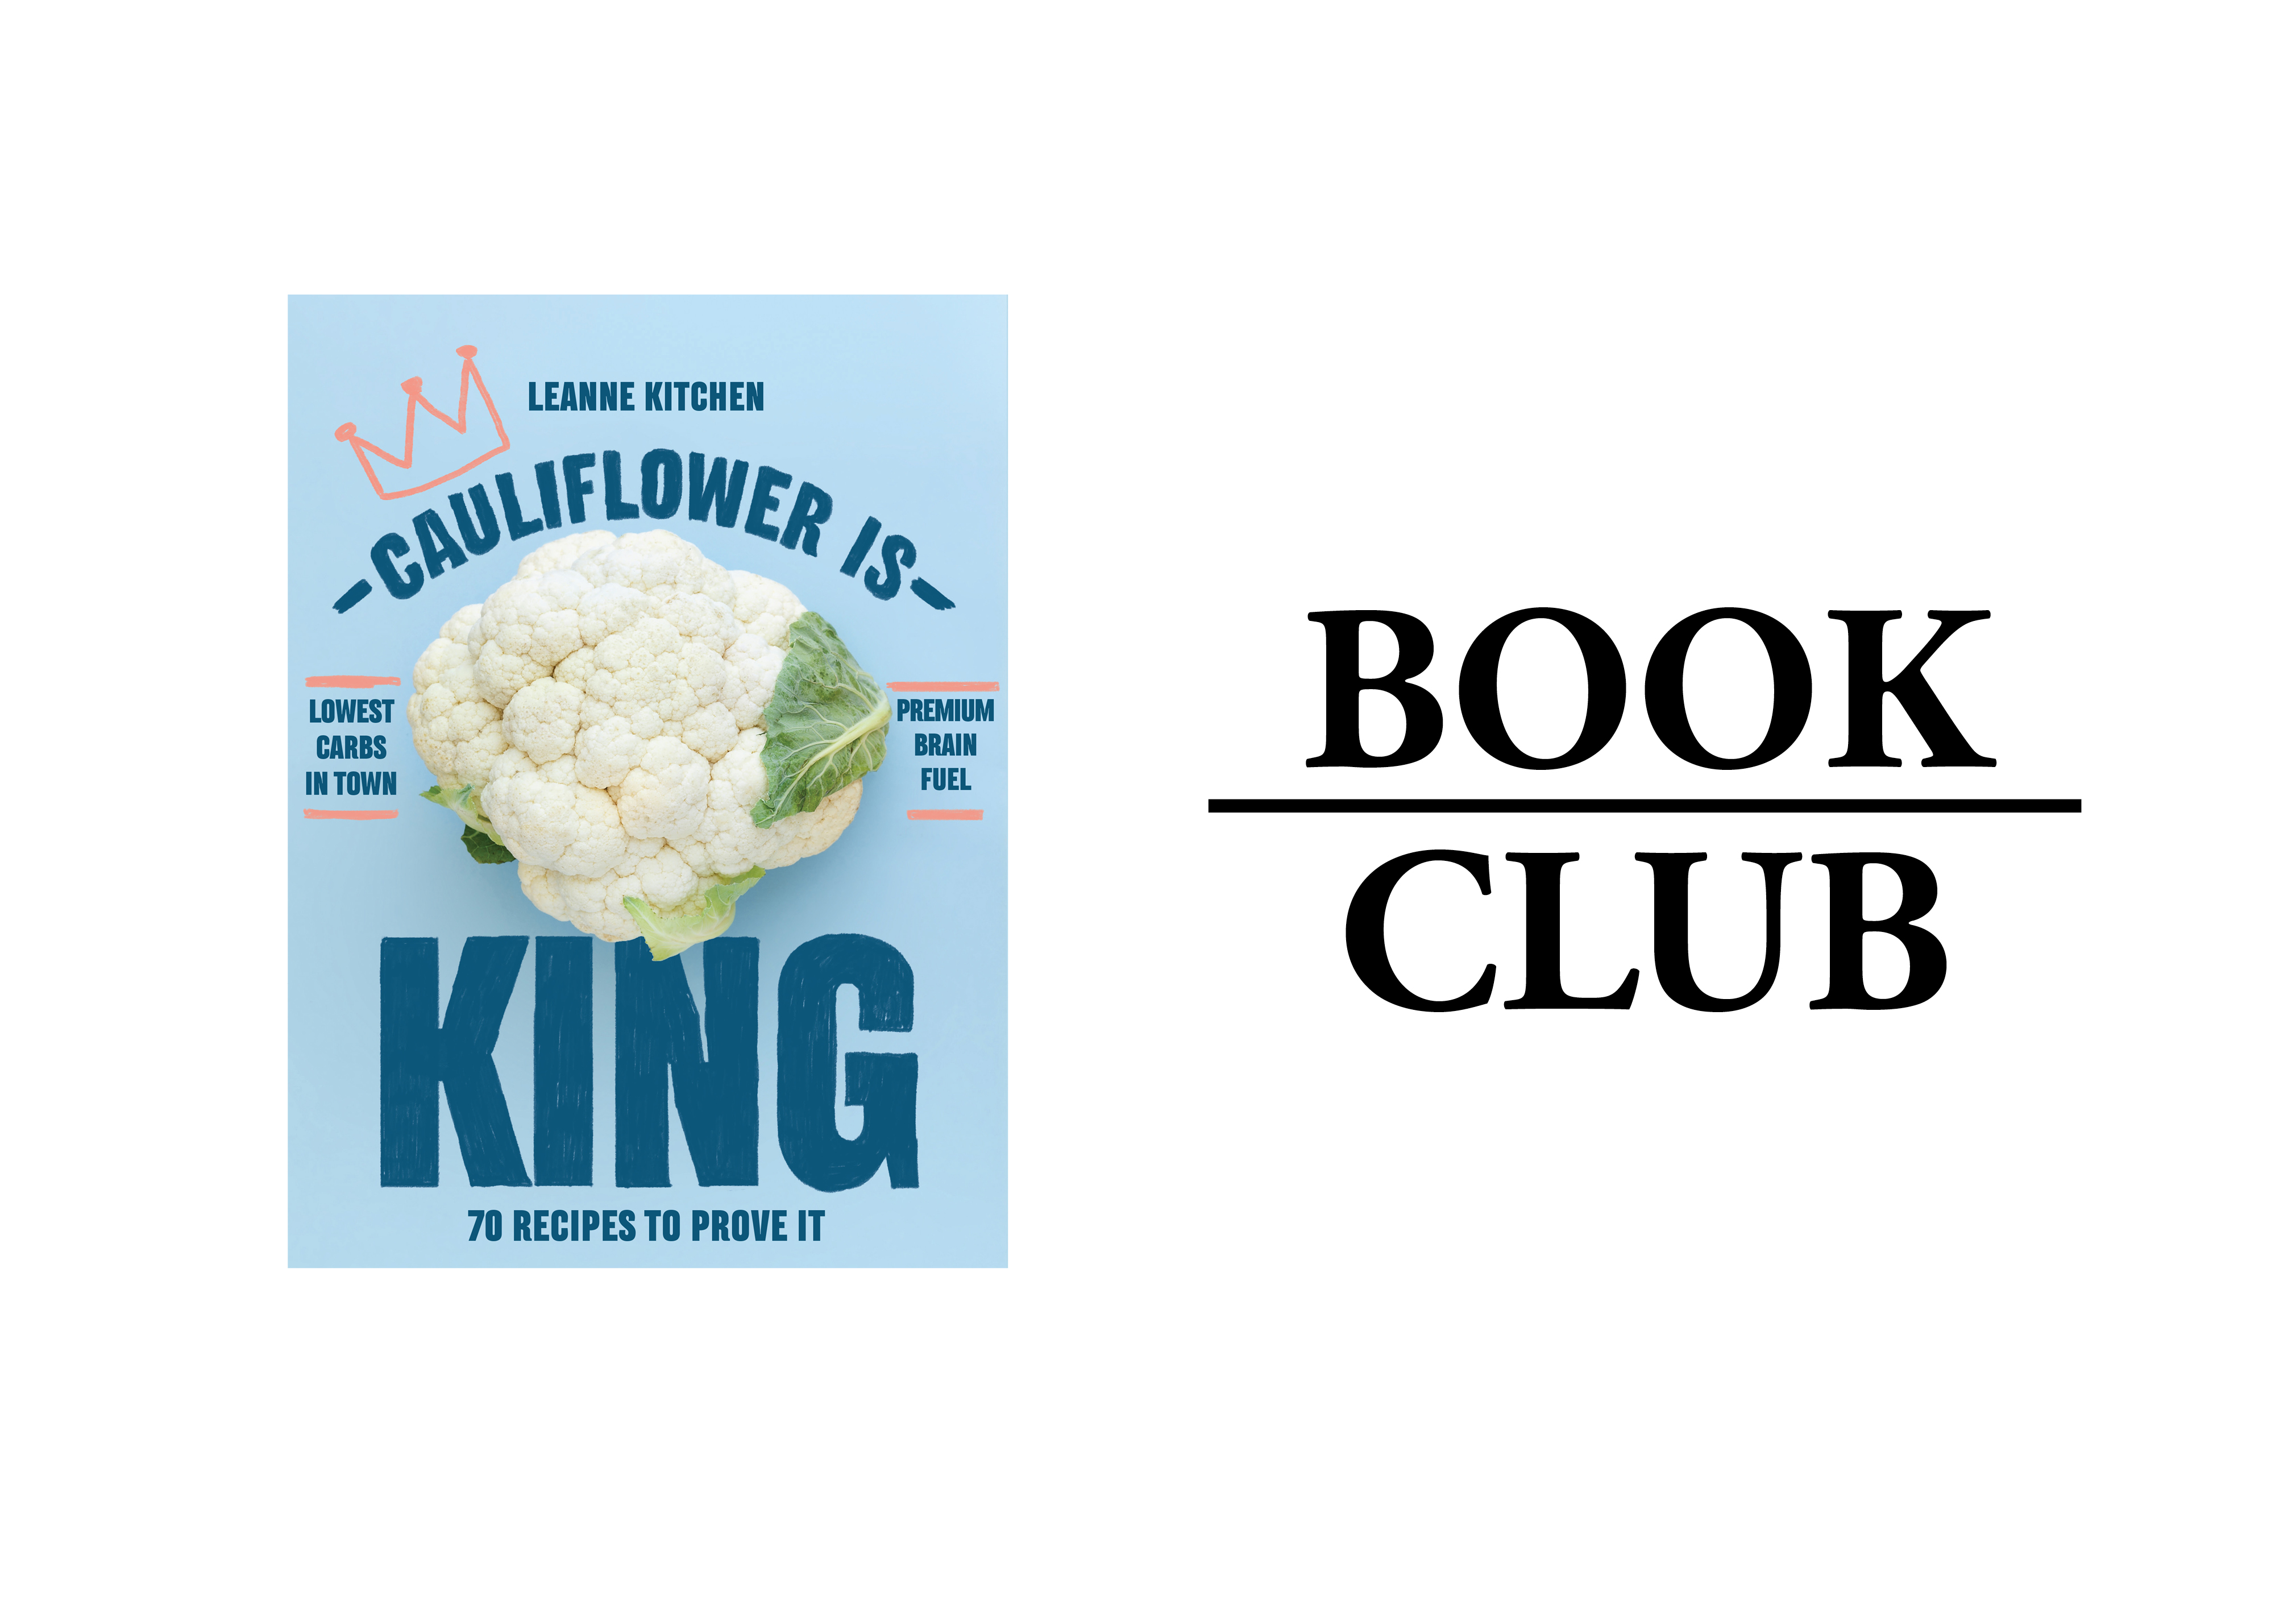 Cauliflower is King by Leanne Kitchen